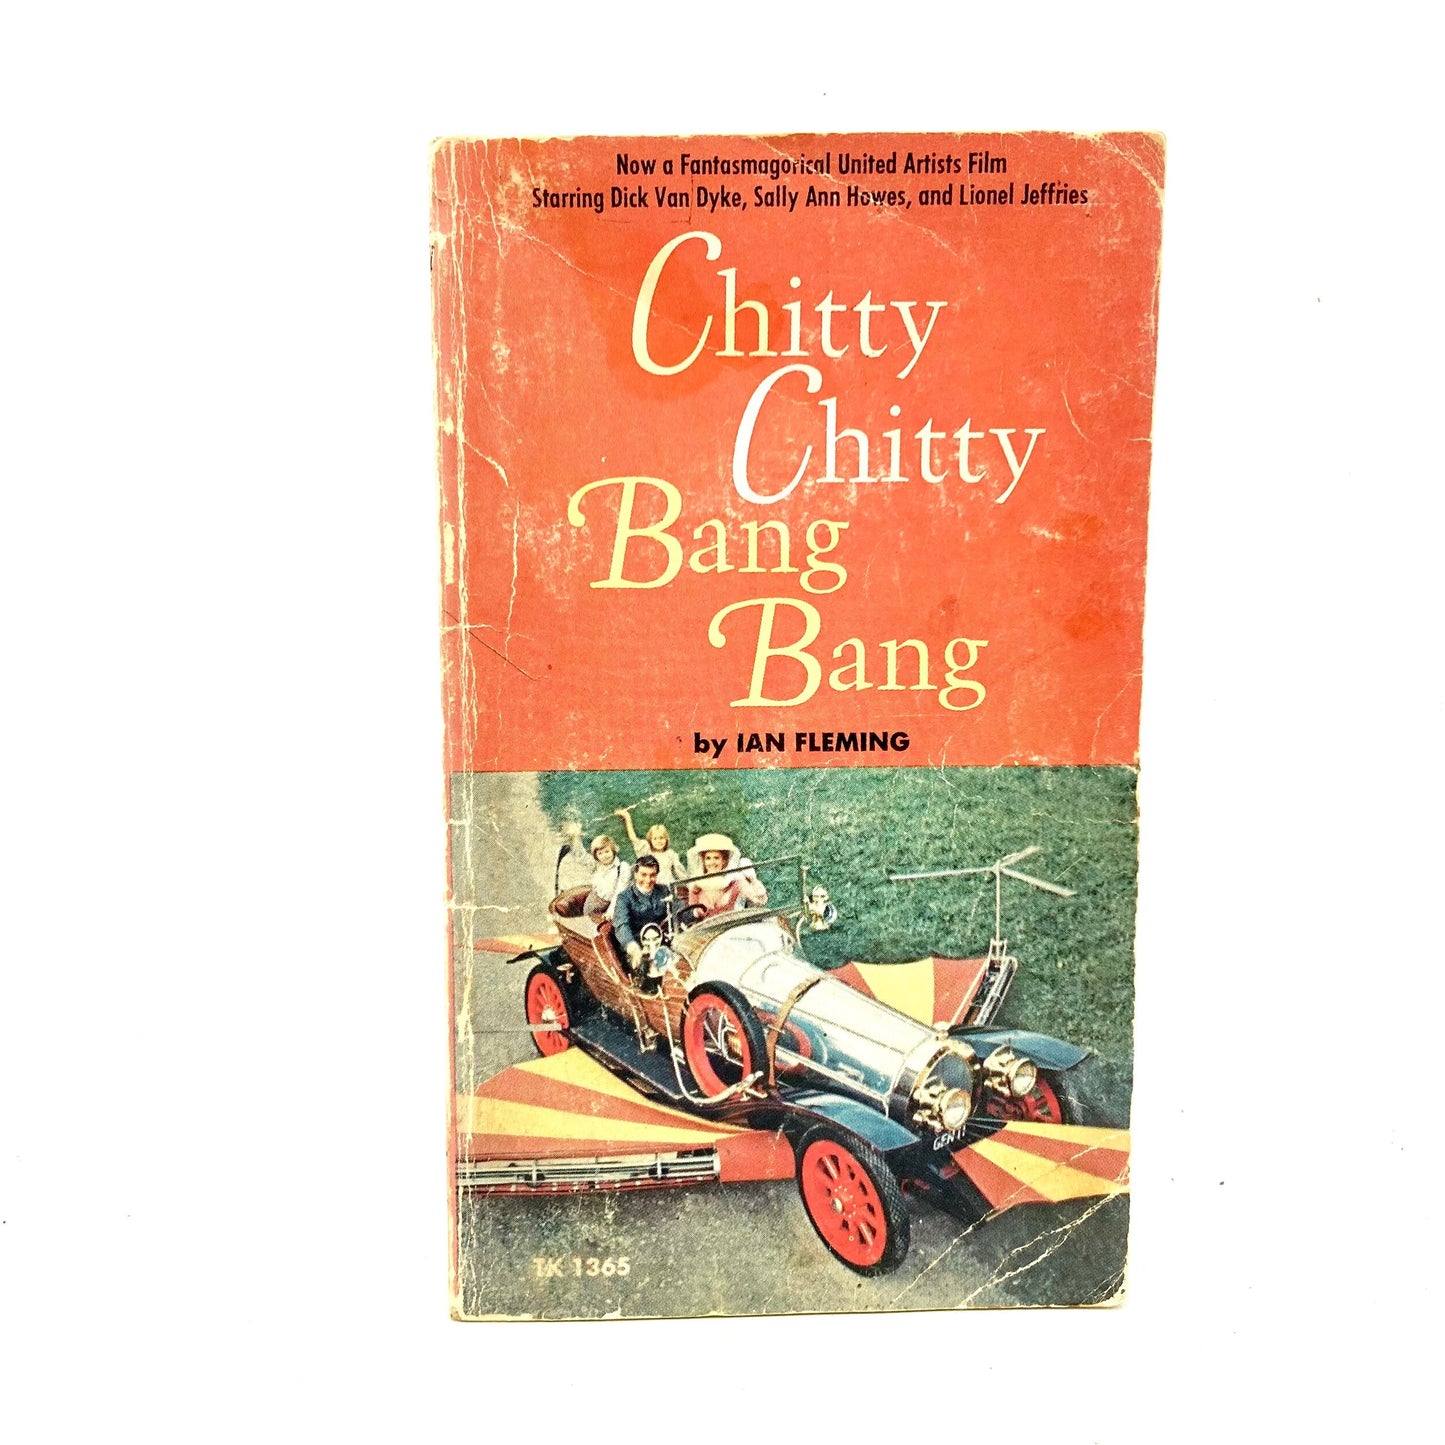 FLEMING, Ian "Chitty Chitty Bang Bang" [Scholastic, 1969] - Buzz Bookstore